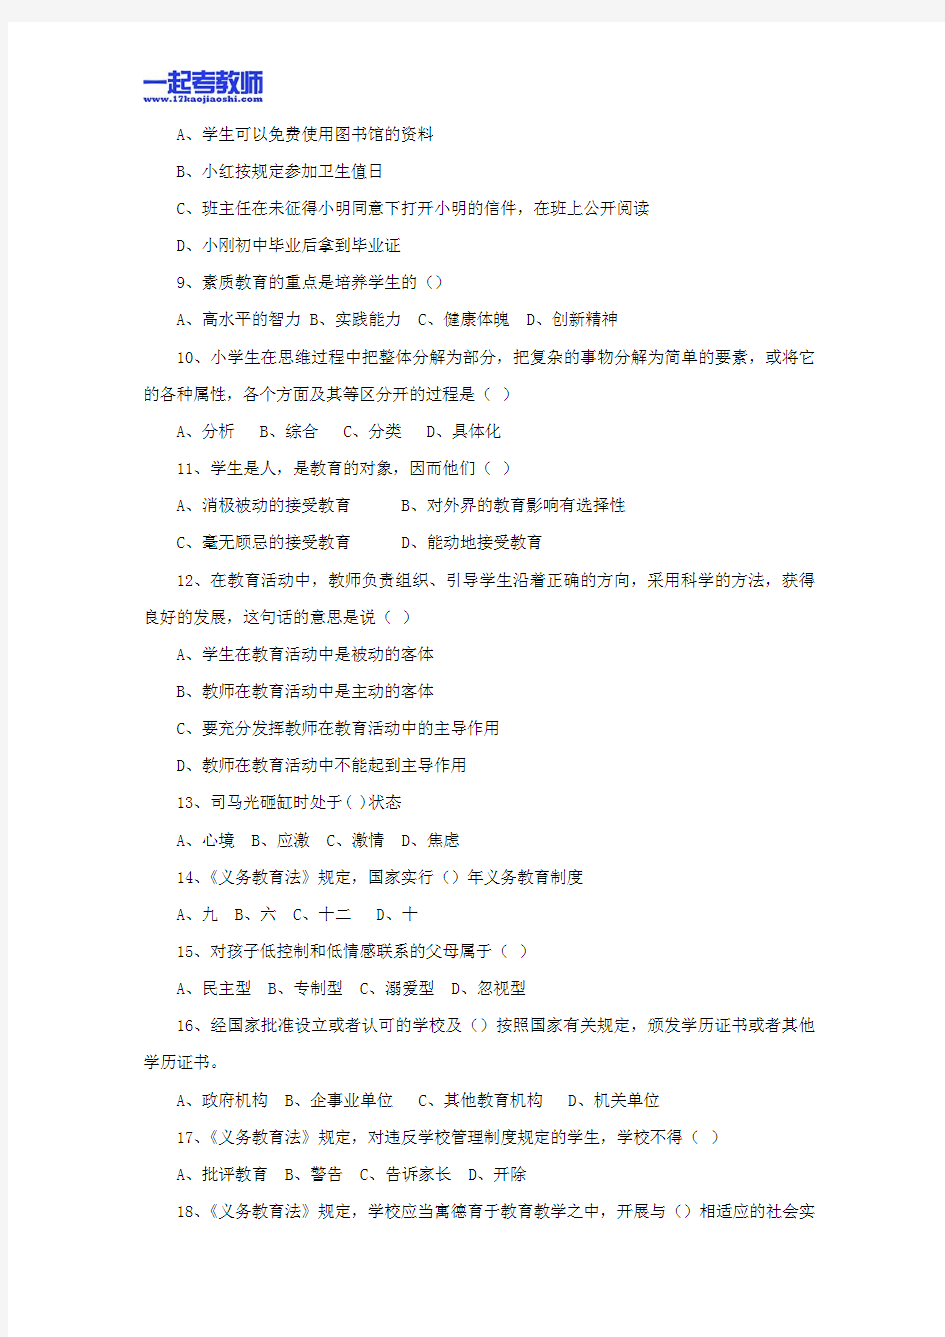 2012年深圳市教师招聘考试笔试小学学段教育综合真题答案解析